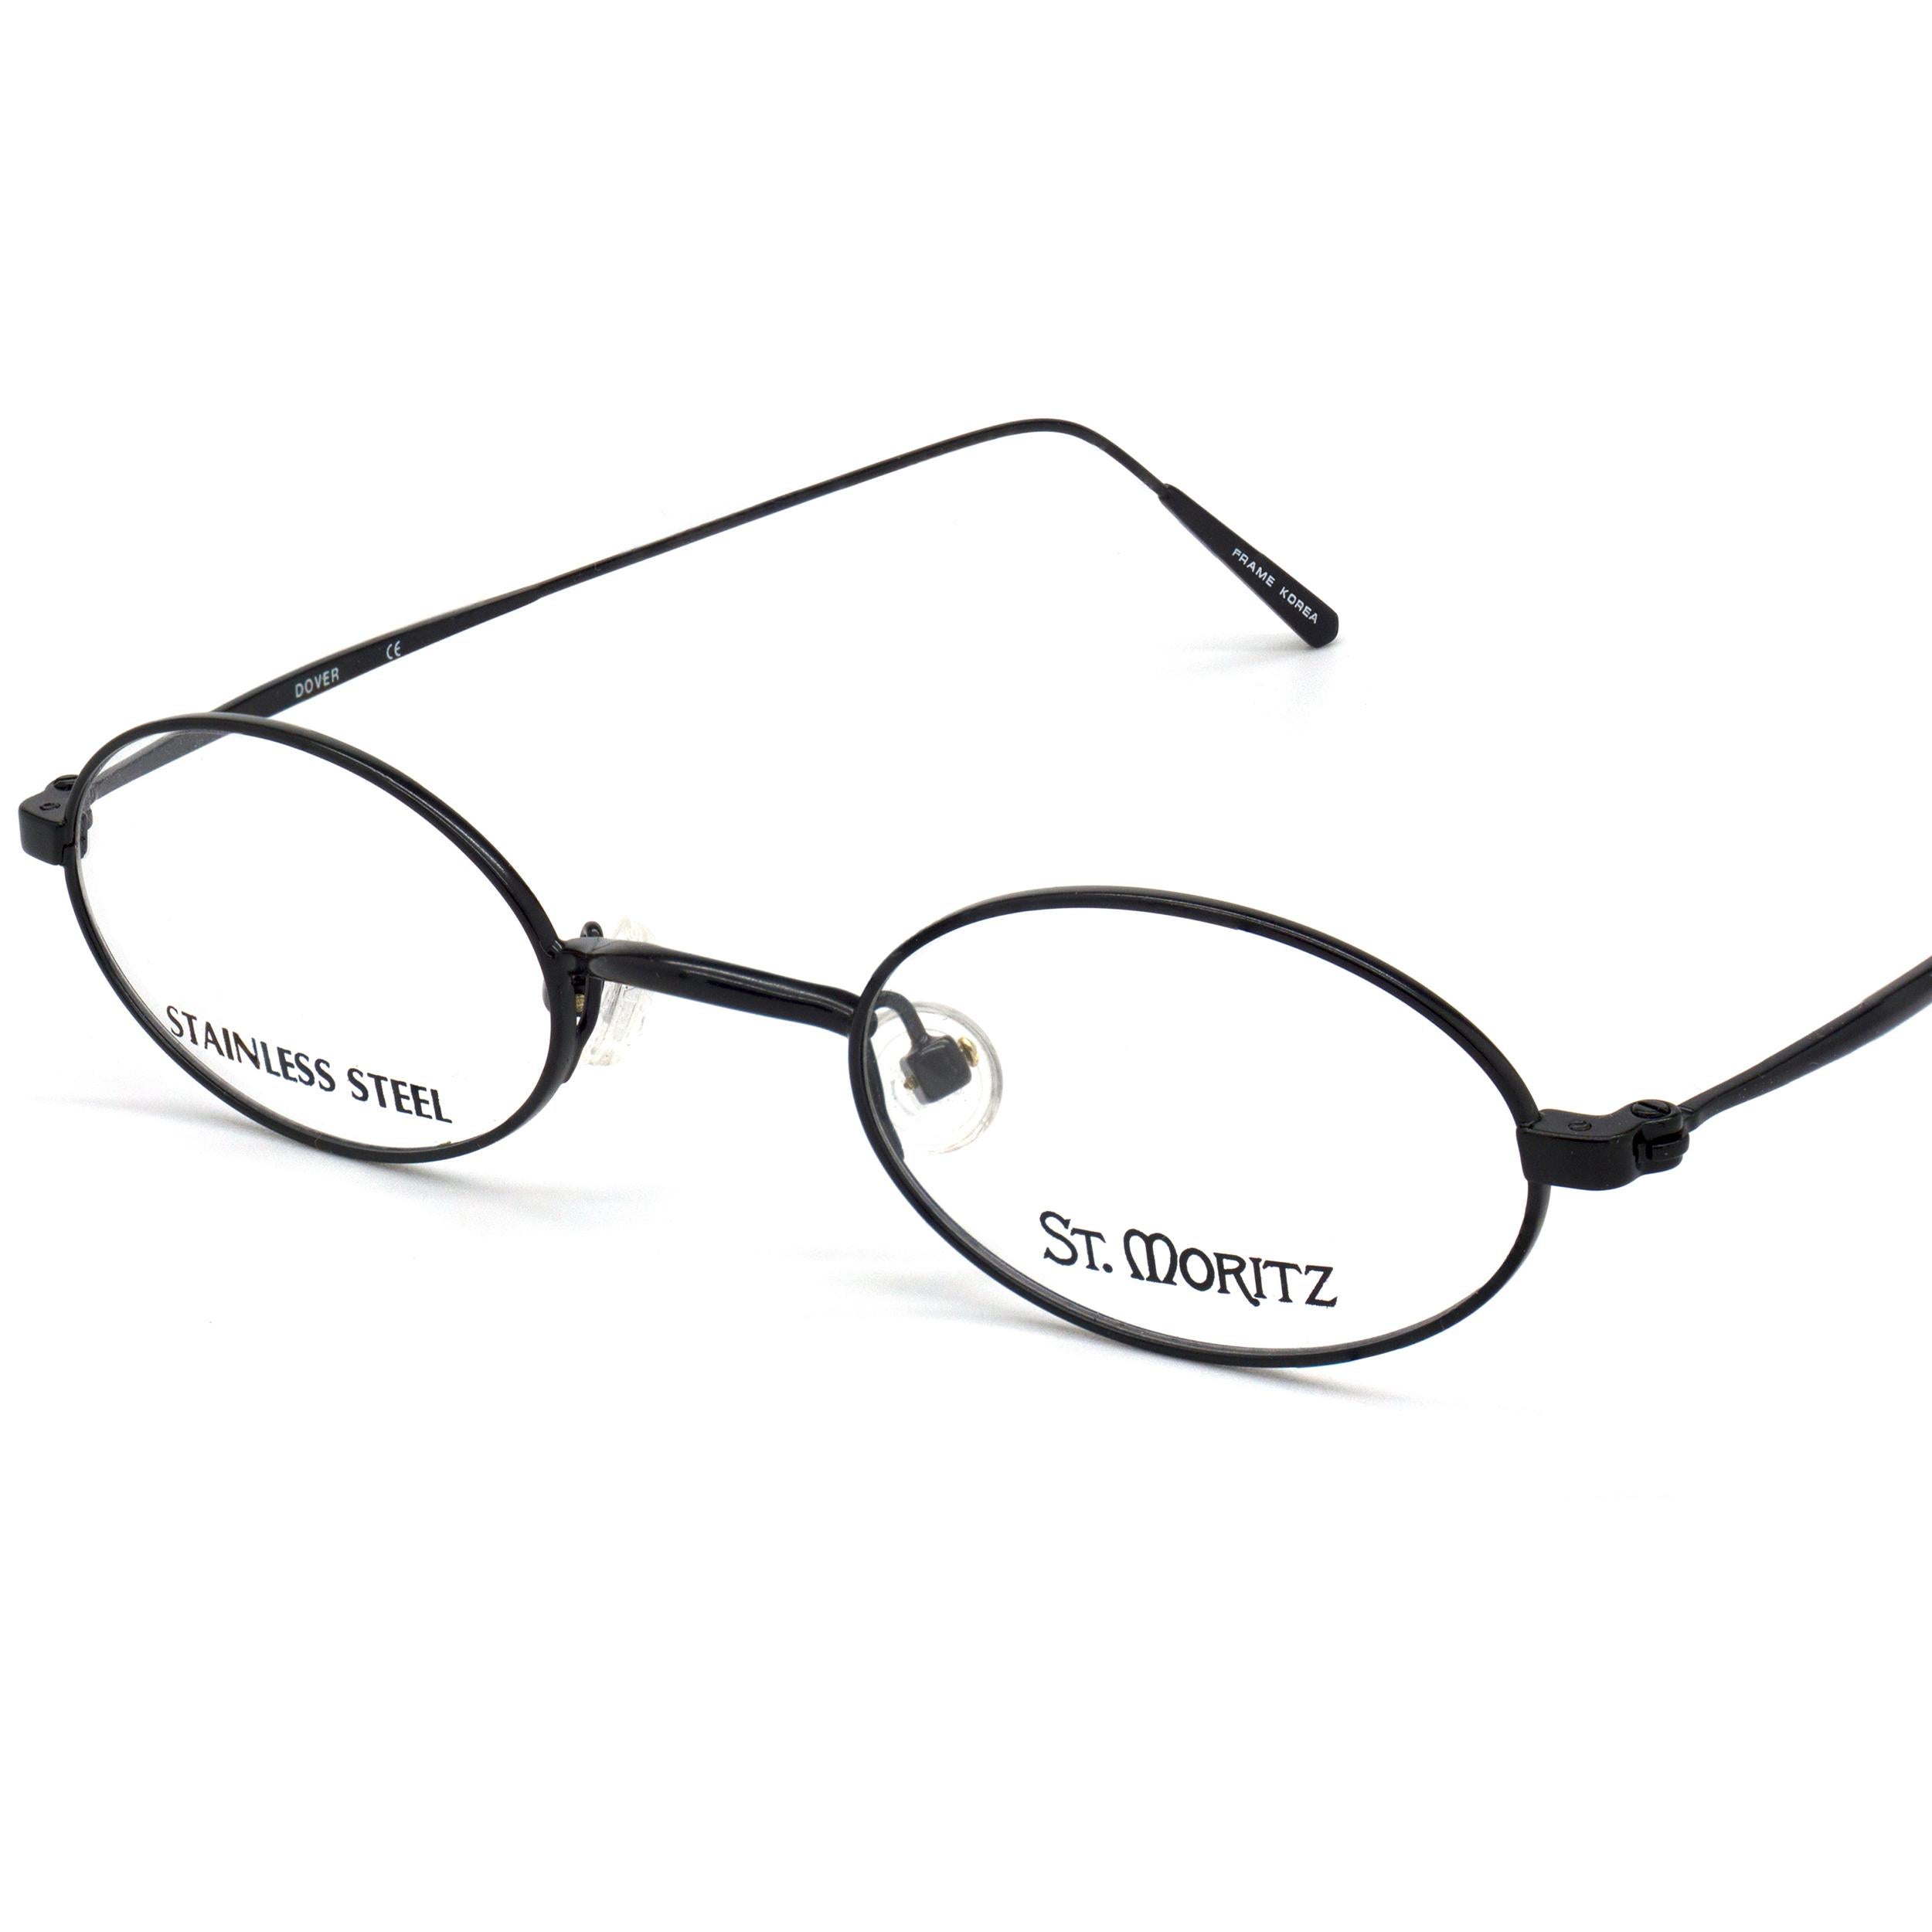 st. moritz eyeglass frames